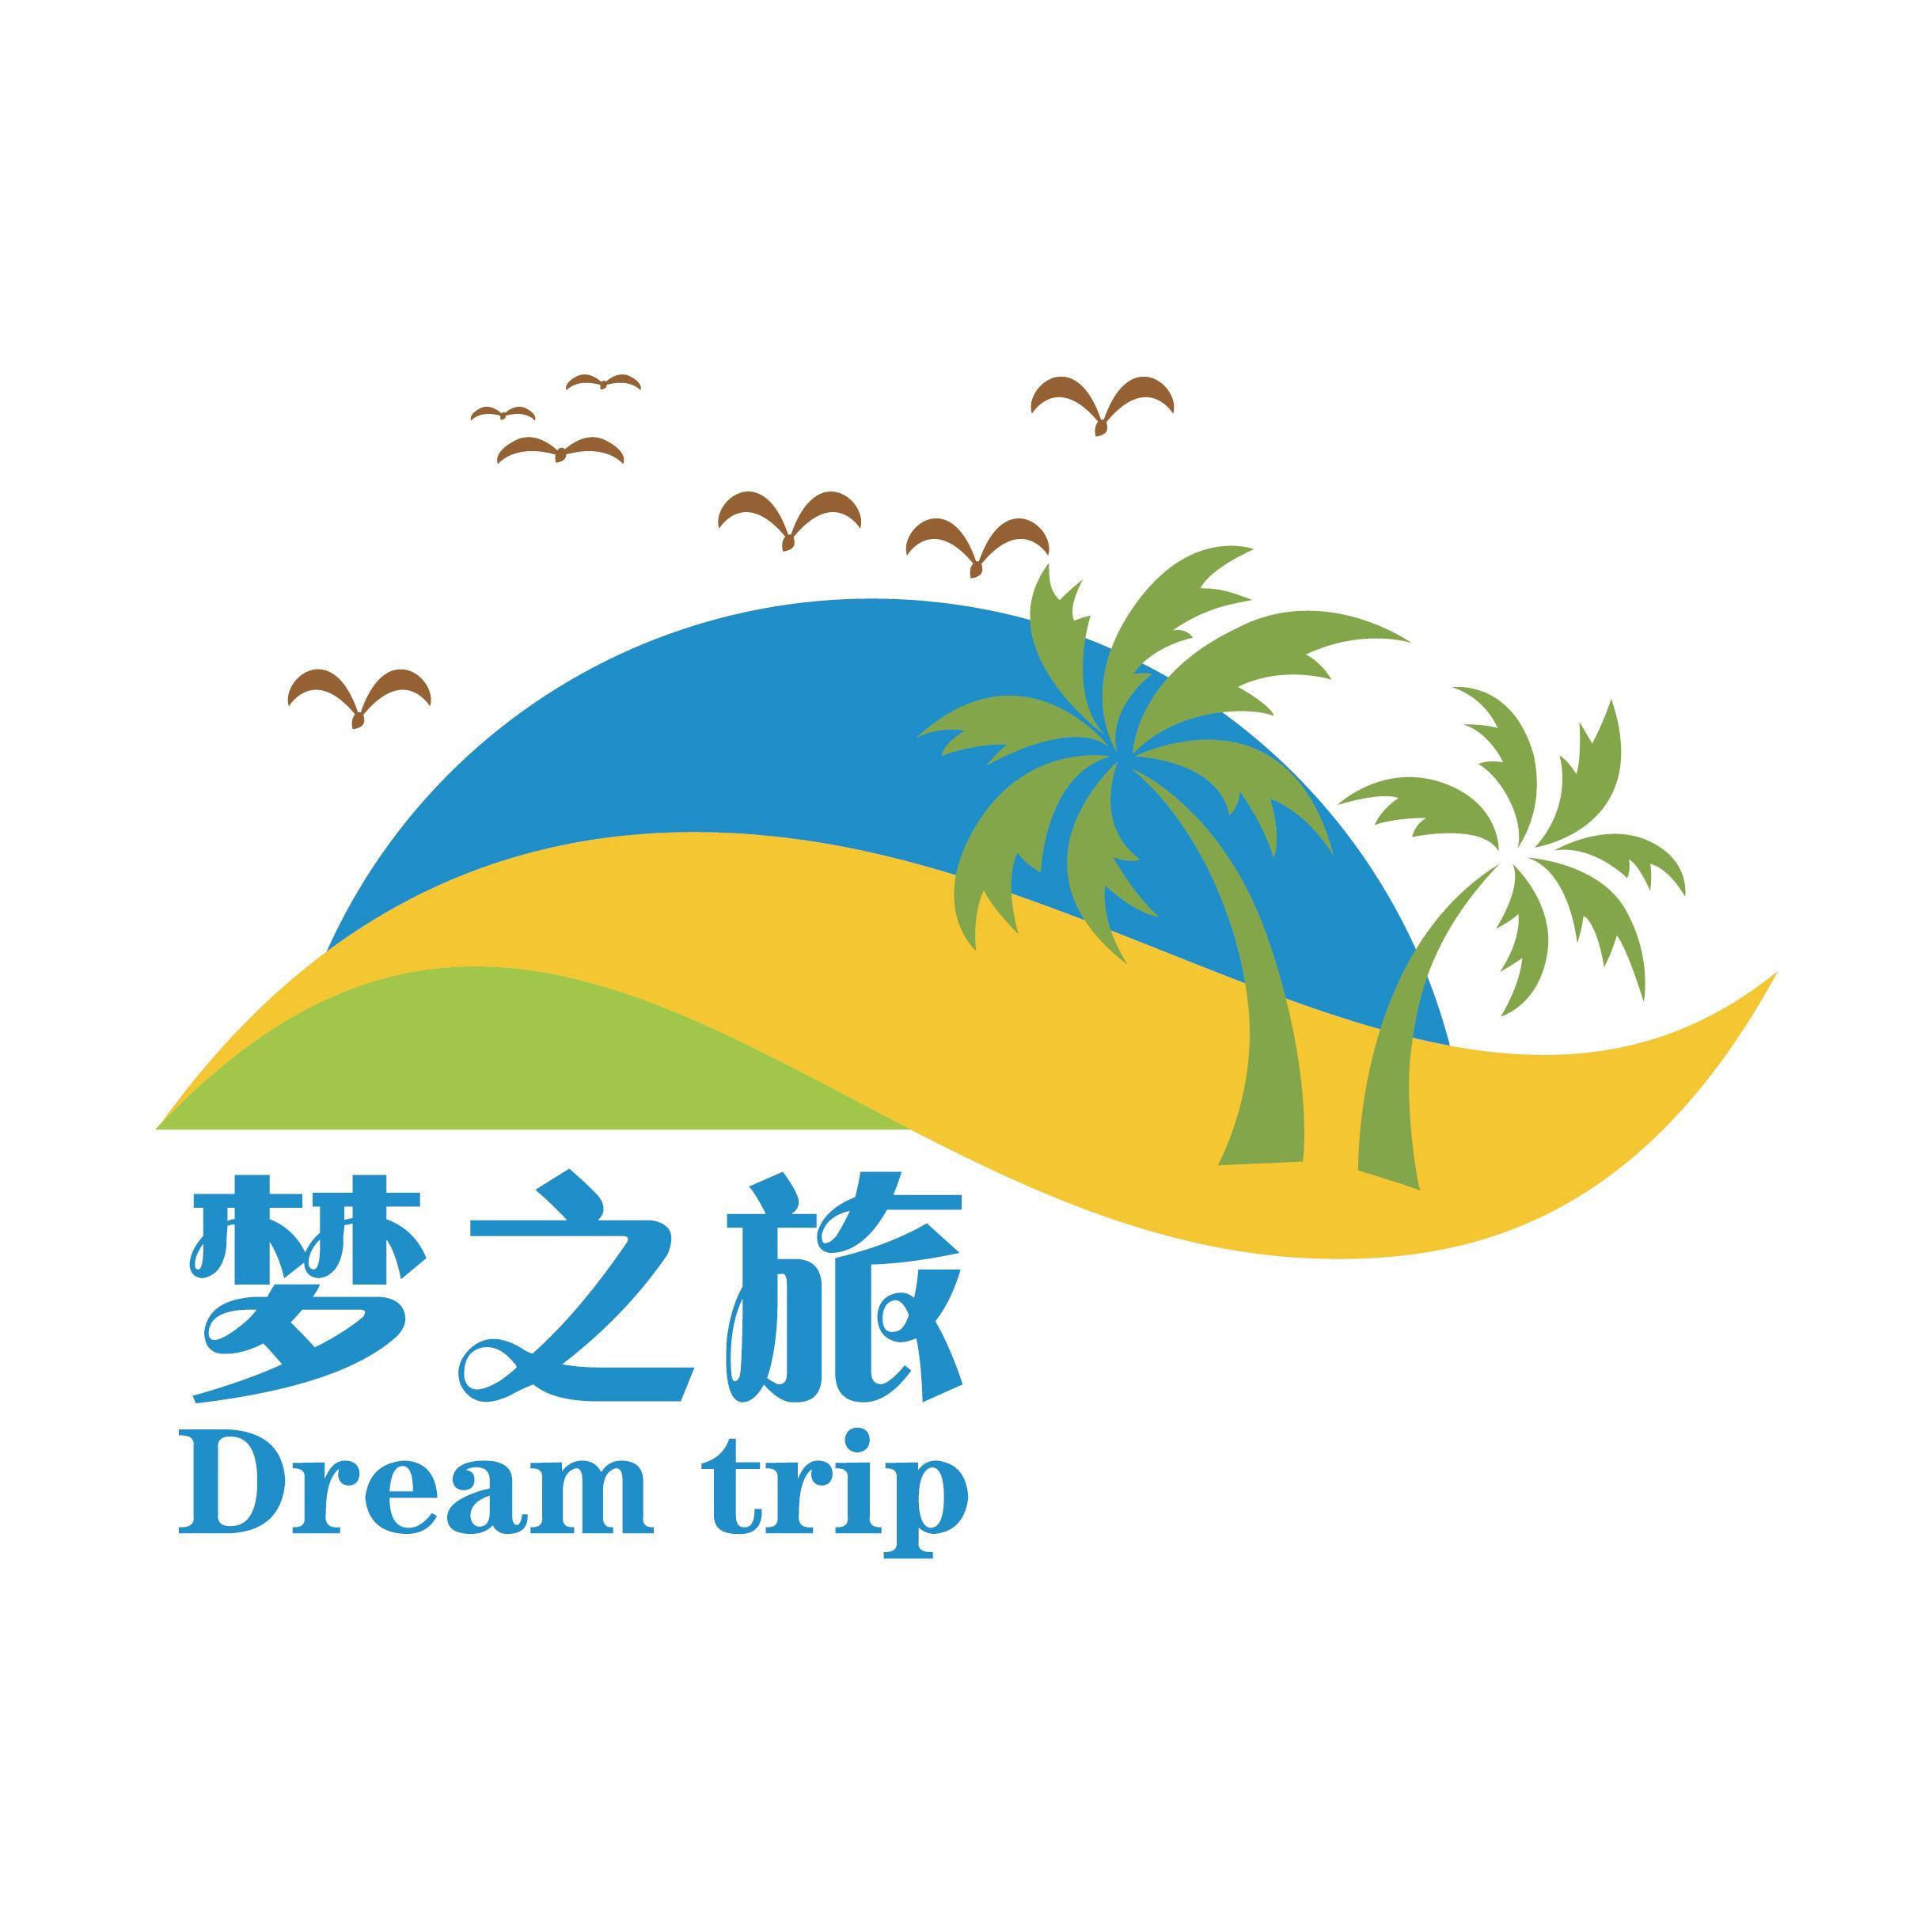 广州梦之旅旅游管理有限公司